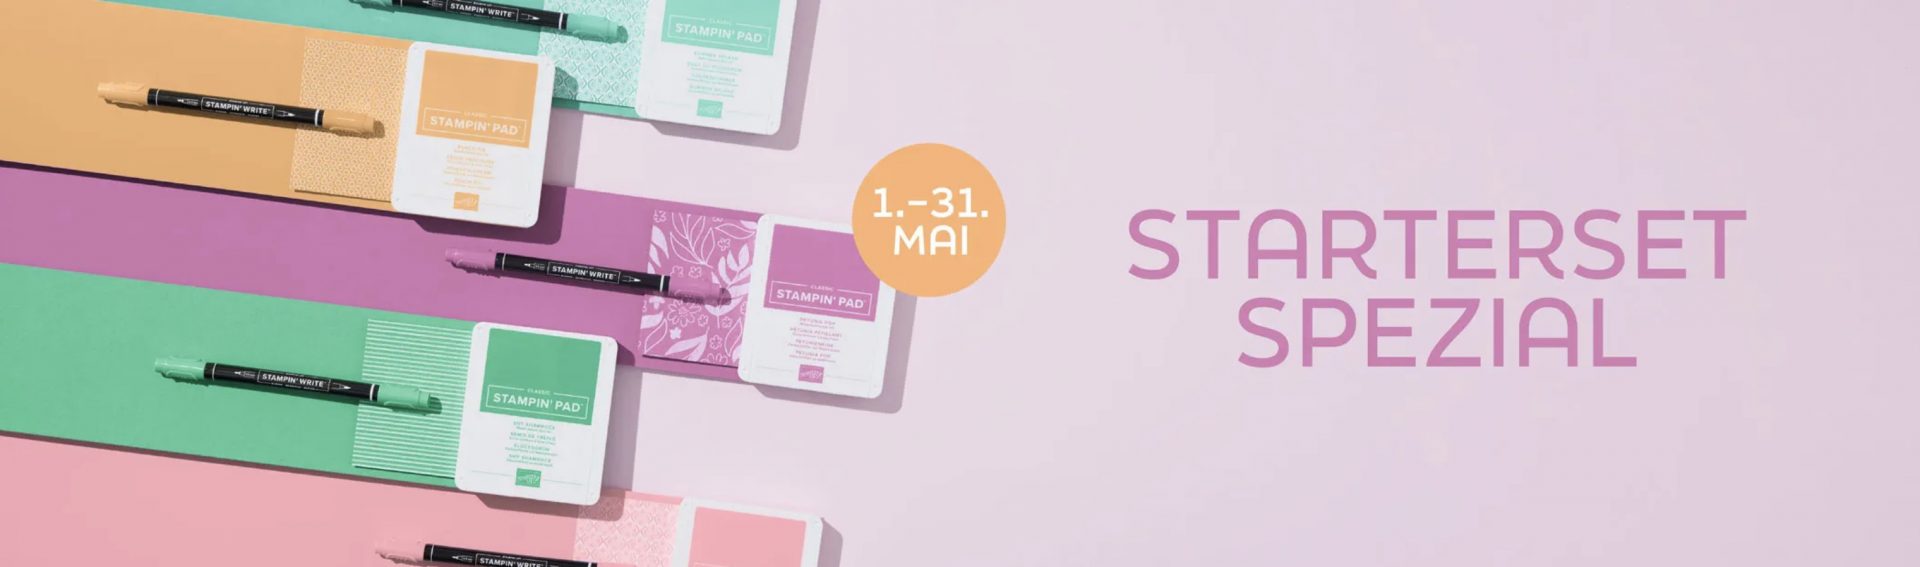 Starterset Spezial - Stampin' Up! Im Mai gibt es für alle Neueinsteiger VIER In Color Produkte 2024-2026 zum Starterset GRATIS dazu!